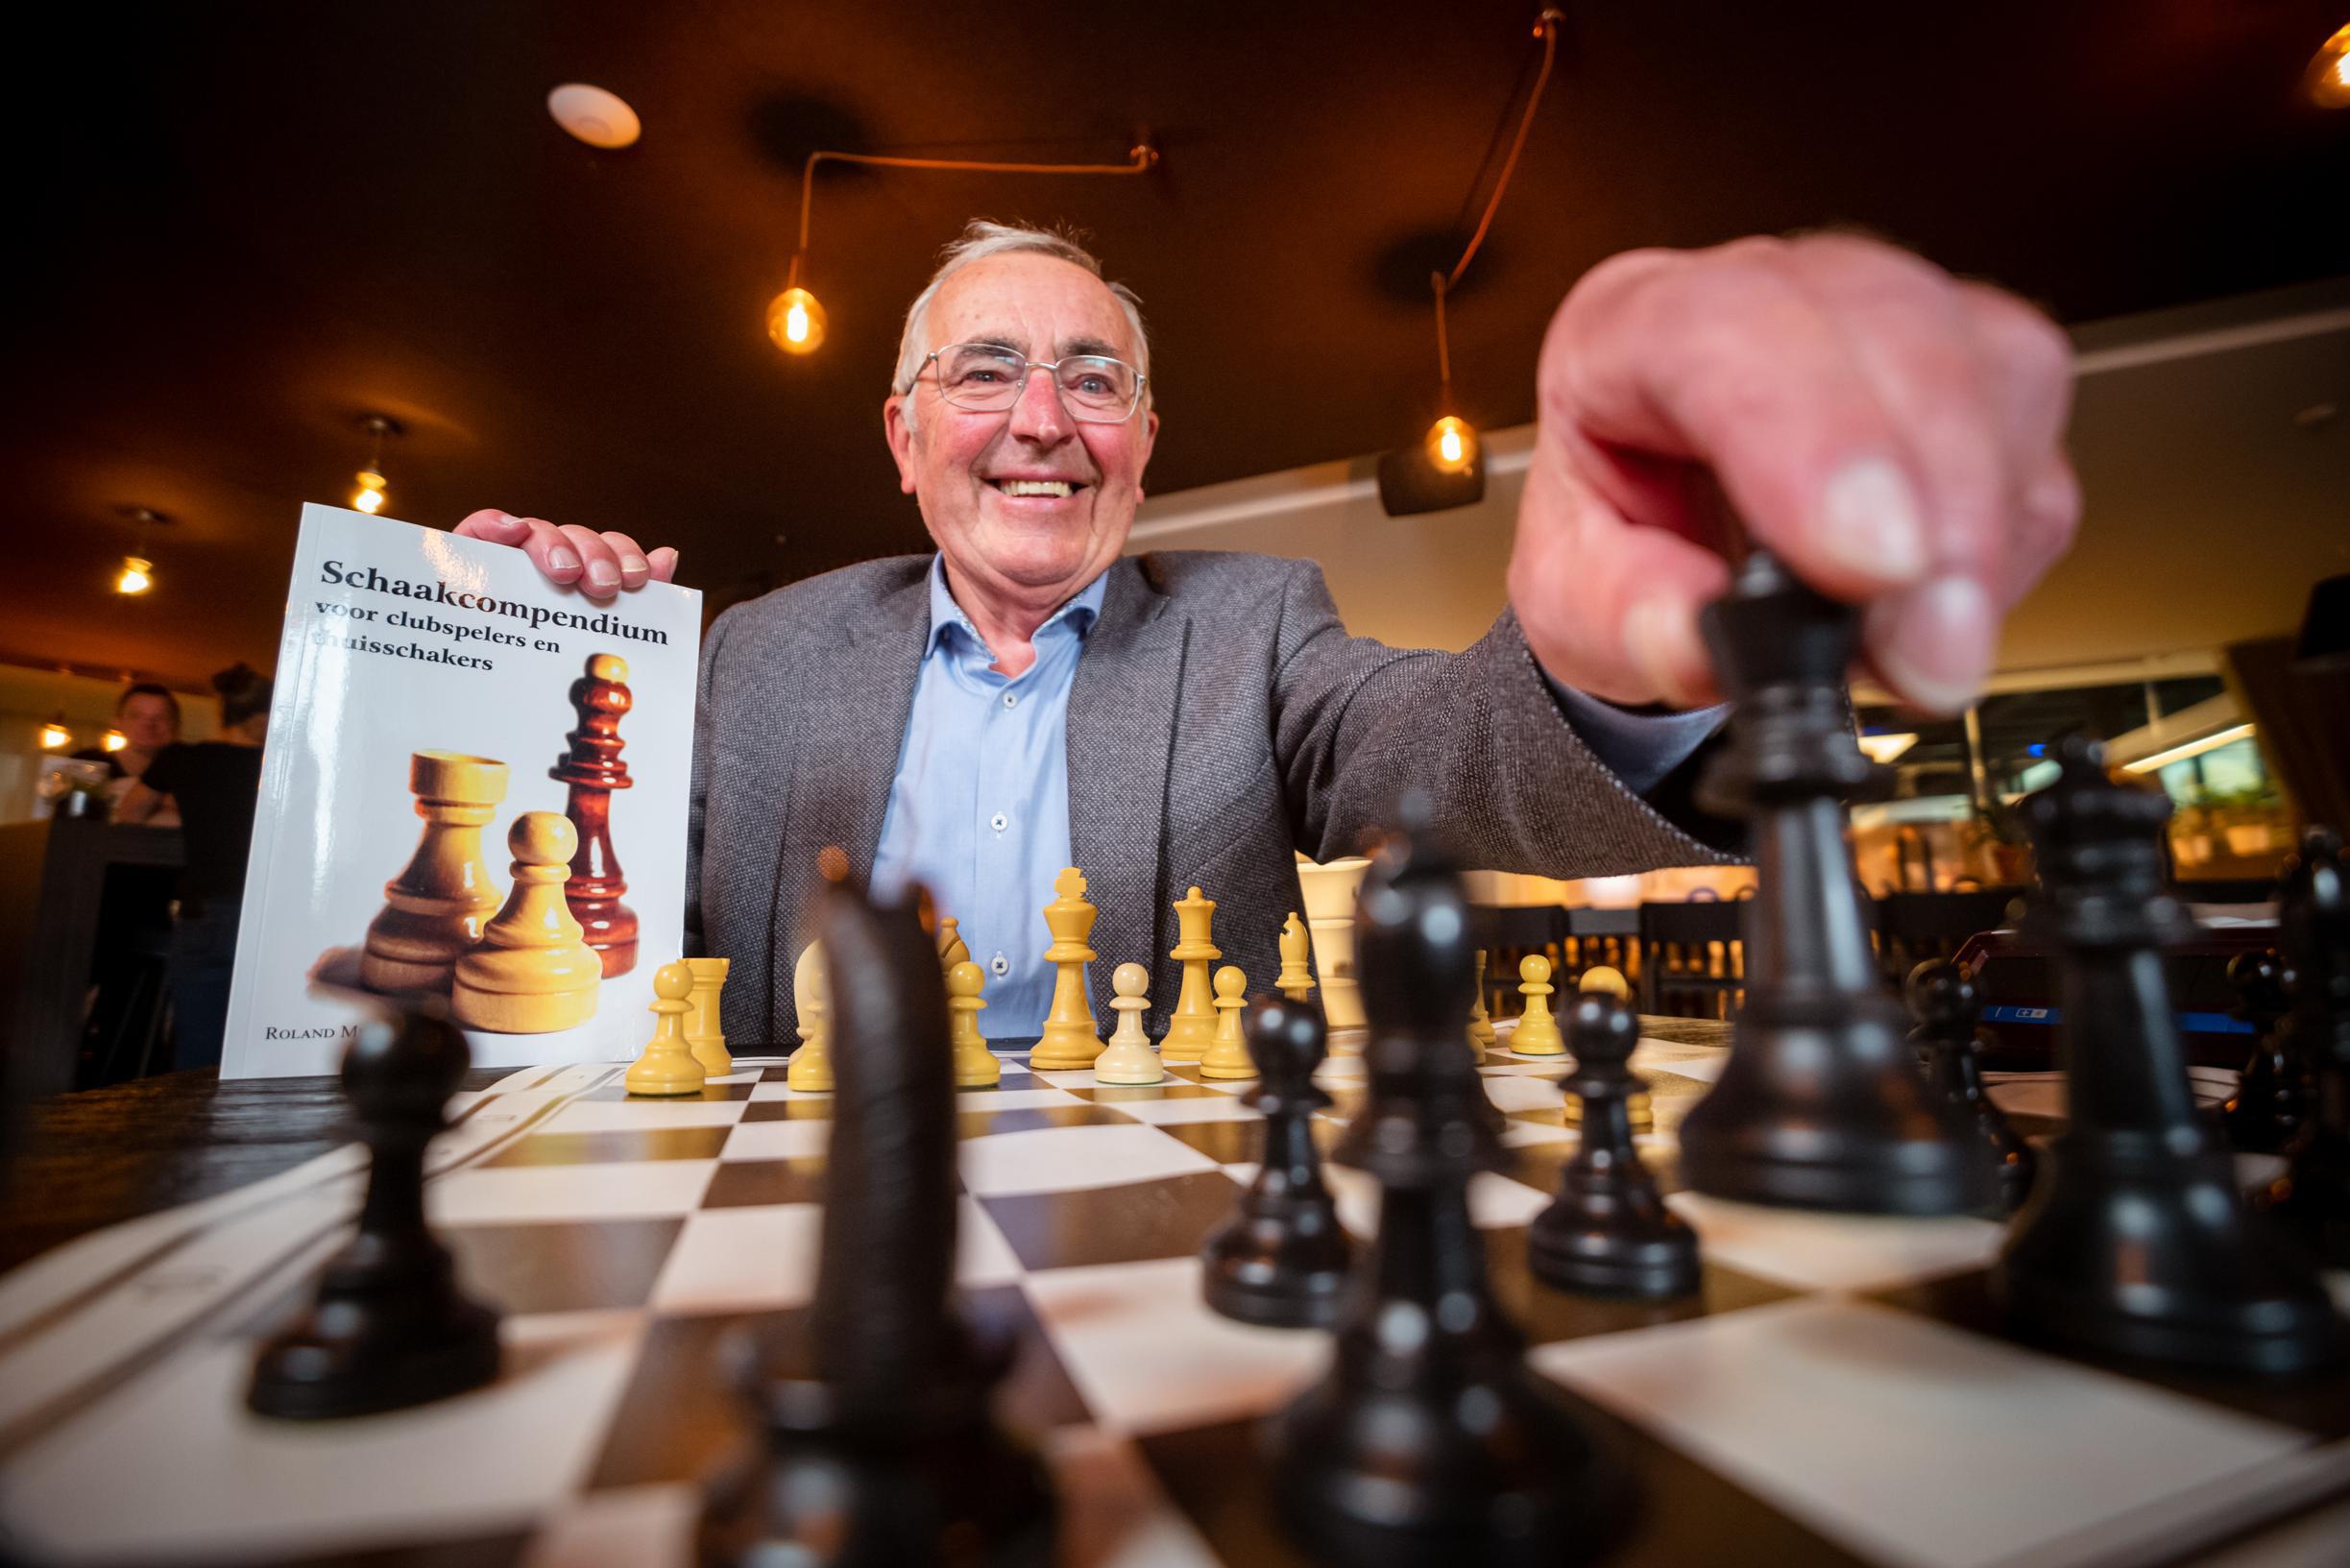 Grappig Verfrissend het dossier Bilzenaar Roland Mebis schrijft schaakbijbel: 'Schaakcompendium voor  clubspelers en thuisschakers' (Bilzen) | Het Belang van Limburg Mobile